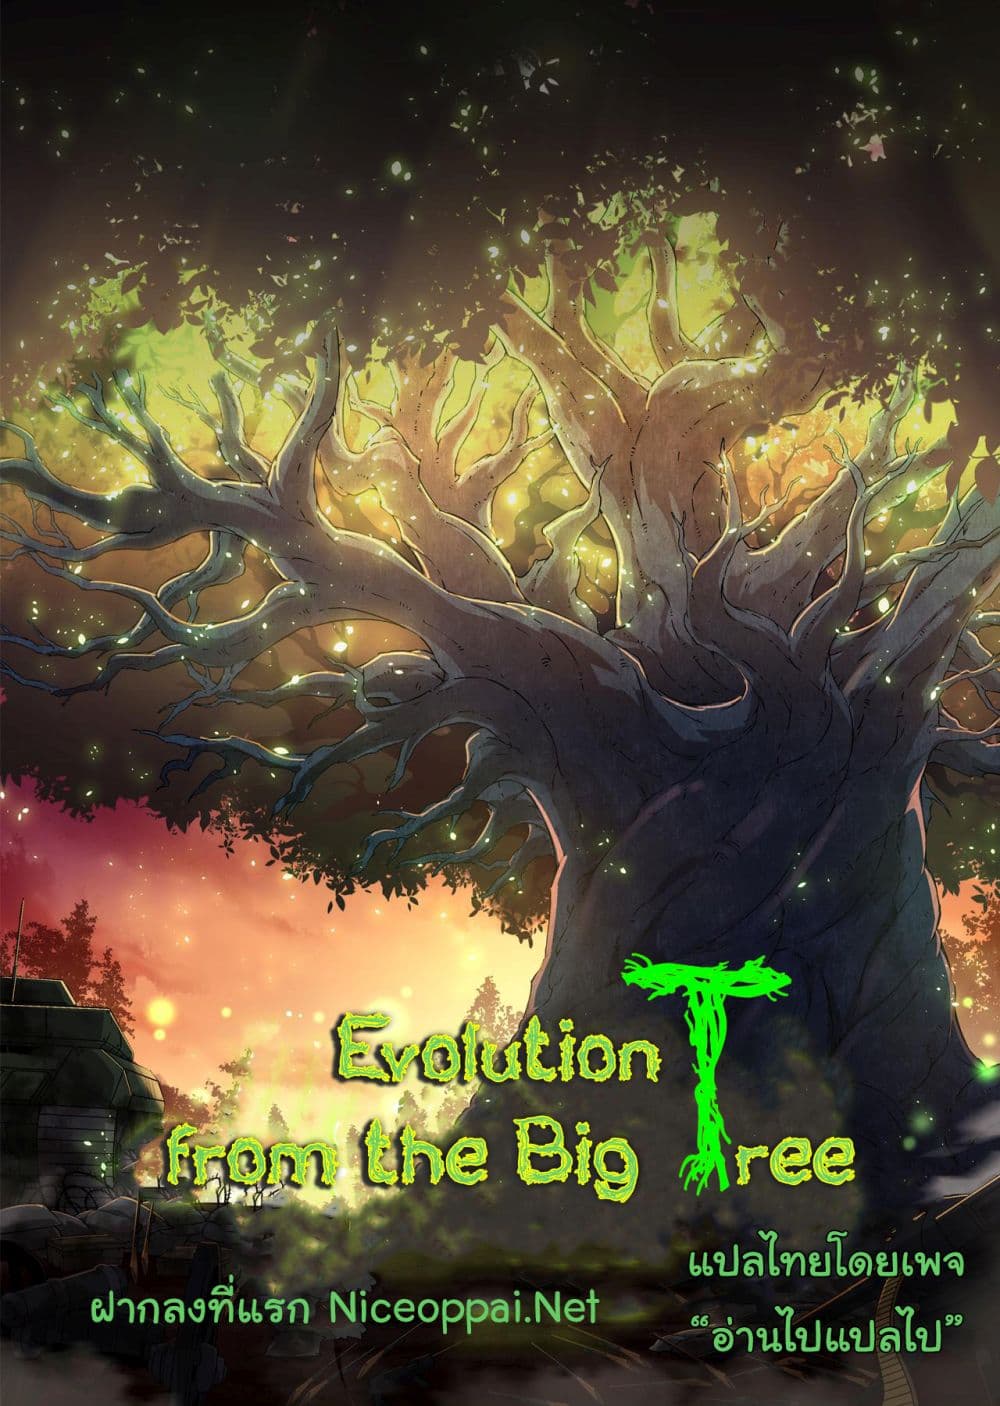 Evolution from the Big Tree Ã Â¸â€¢Ã Â¸Â­Ã Â¸â„¢Ã Â¸â€”Ã Â¸ÂµÃ Â¹Ë† 5 (1)